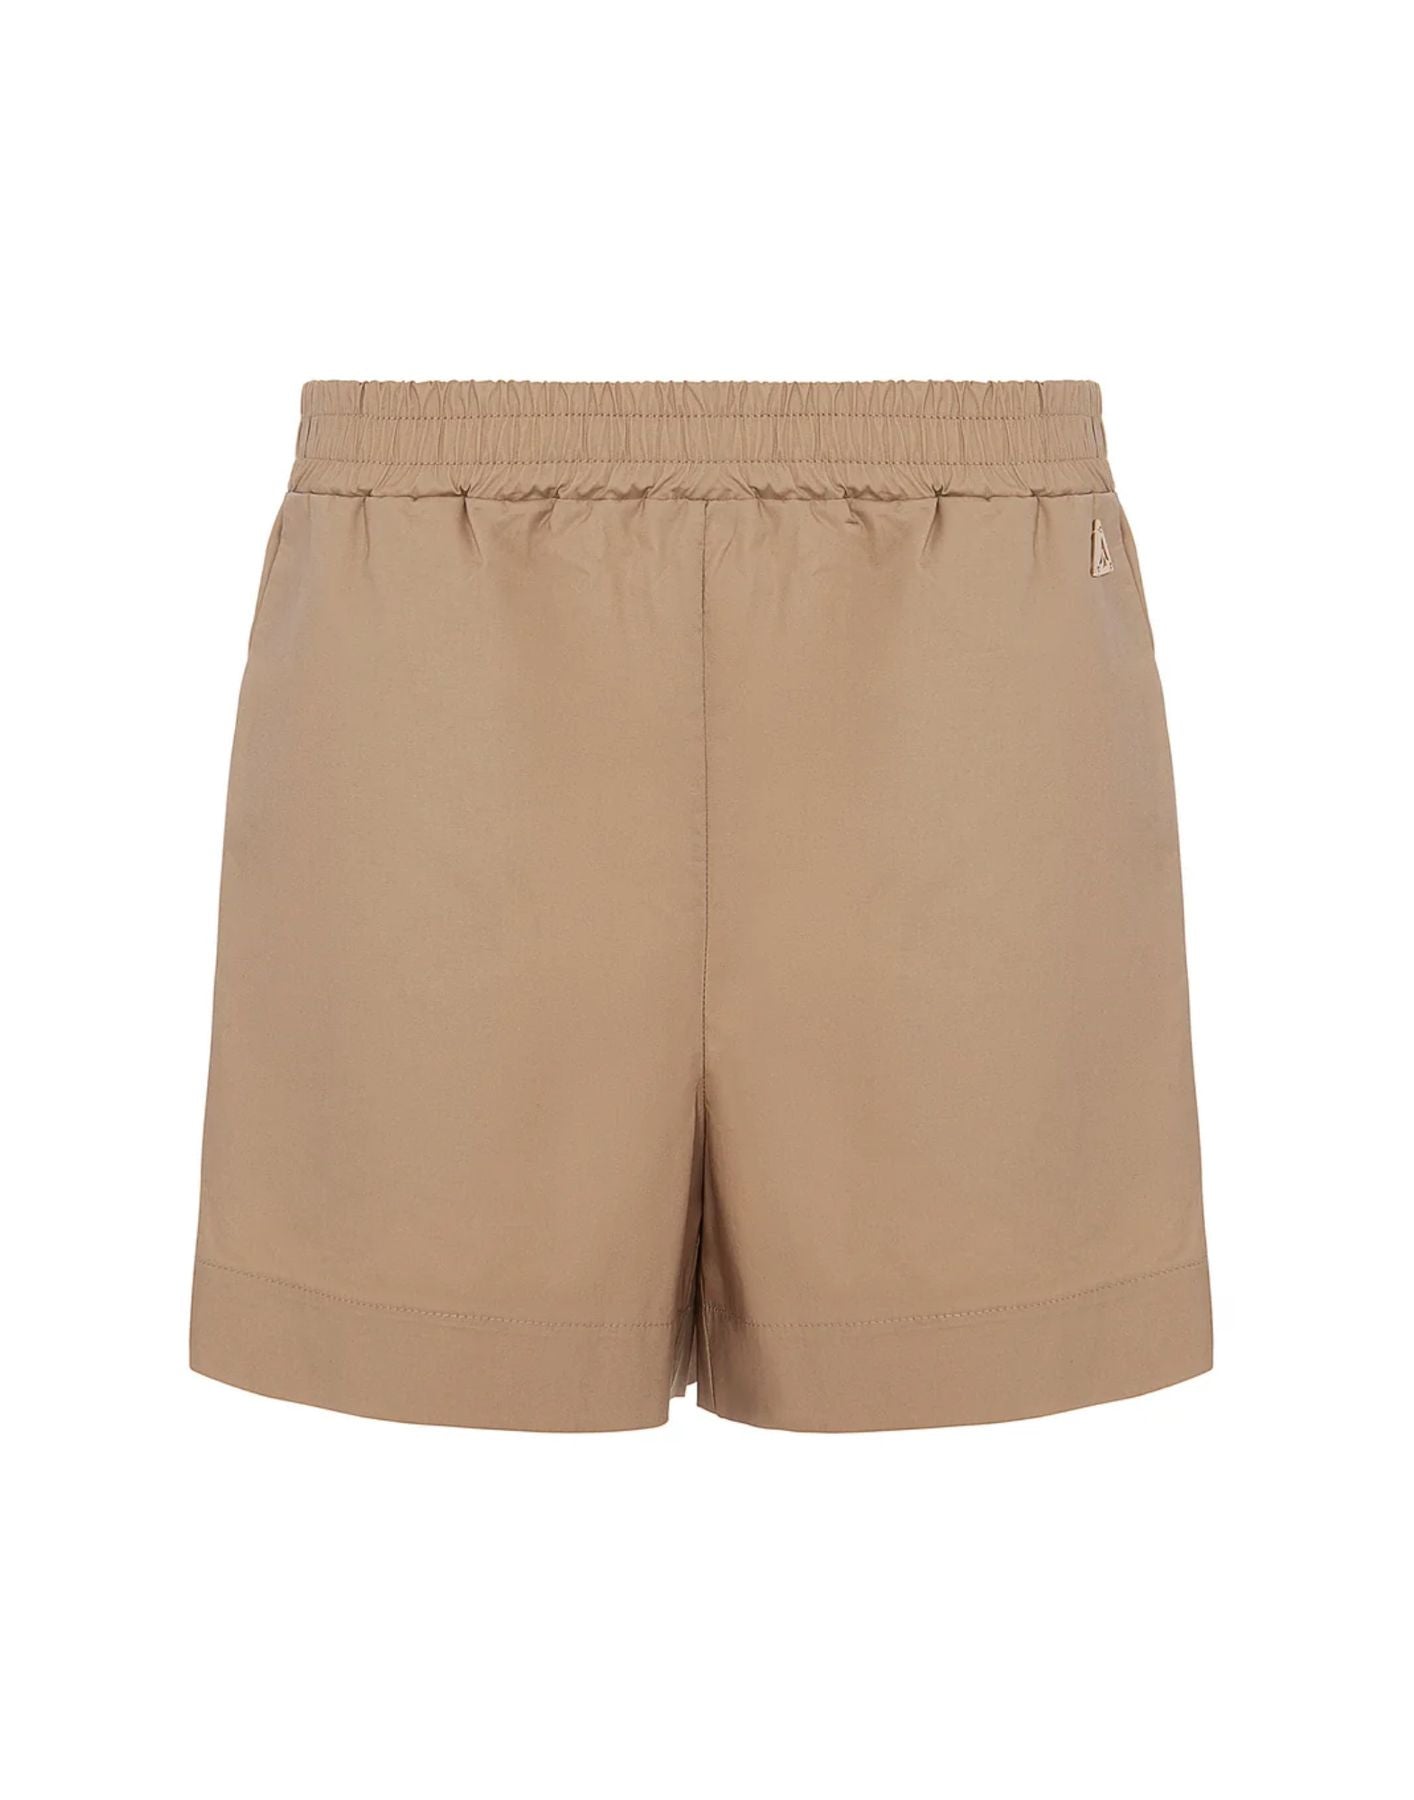 Pantalones cortos para mujer shkd05121 sabbia Akep